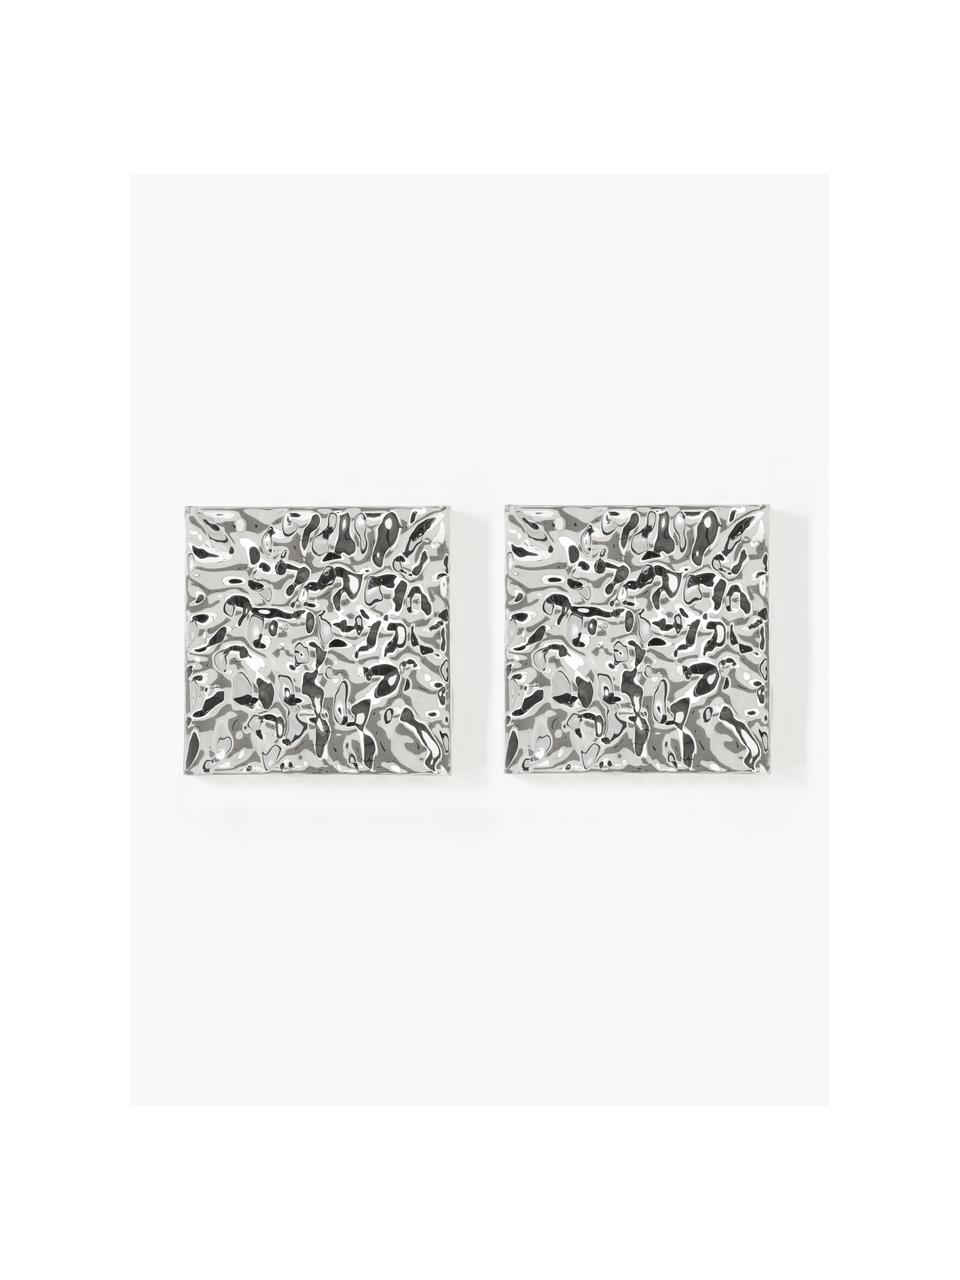 Wandobjecten Splash met een gehamerd oppervlak, 2 stuks, Aluminium, gepolijst, gelakt, Zilverkleurig, B 50 x H 50 cm